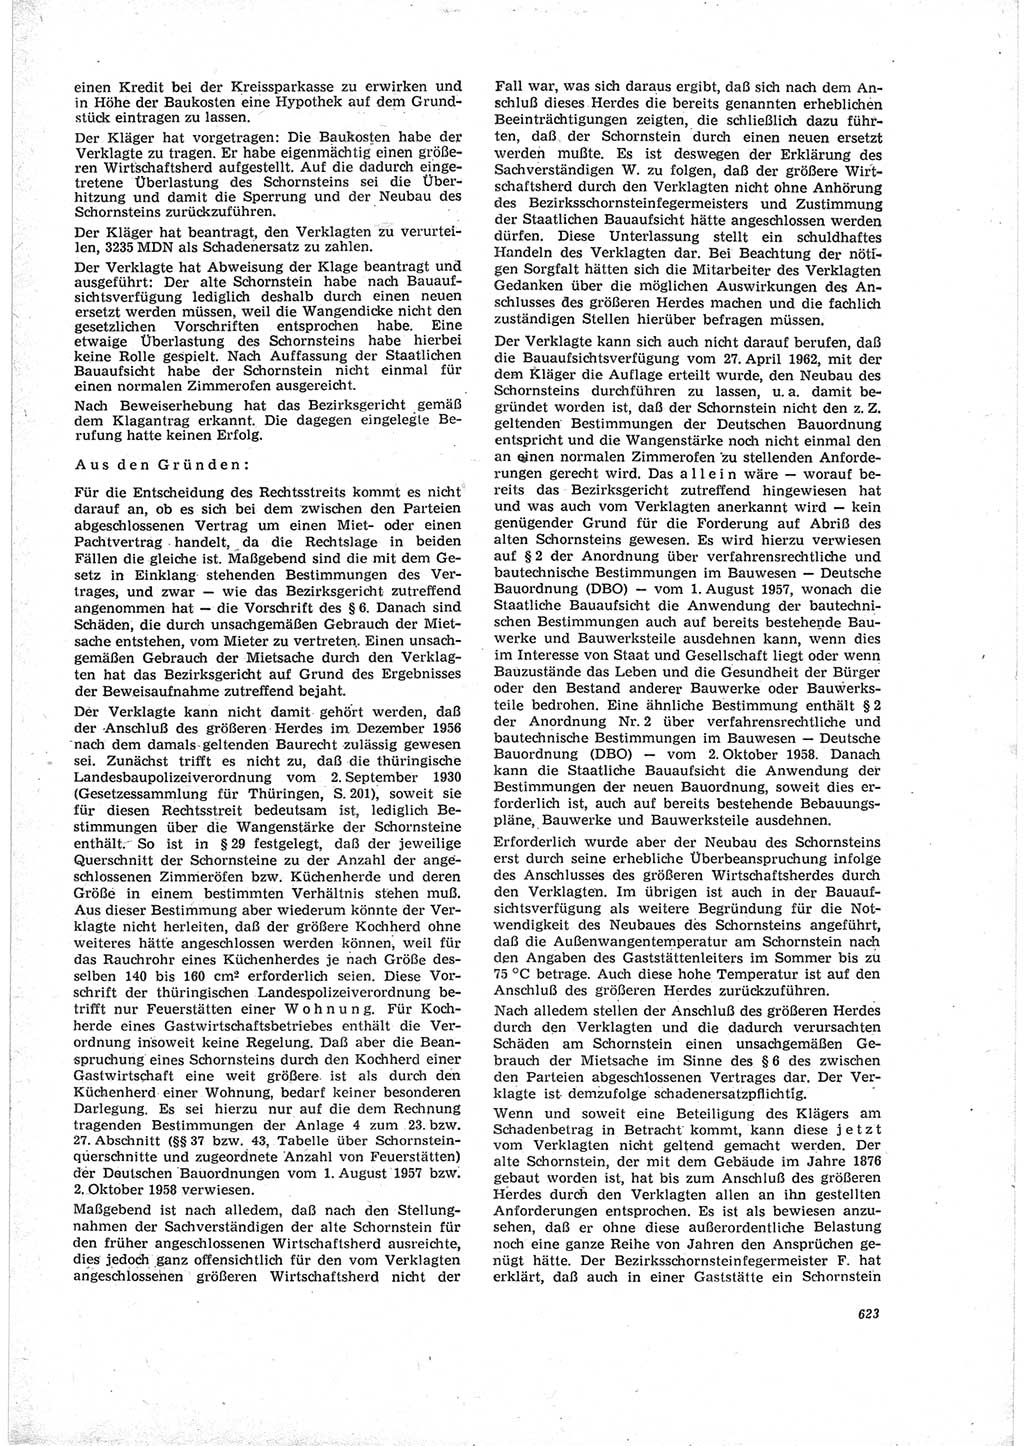 Neue Justiz (NJ), Zeitschrift für Recht und Rechtswissenschaft [Deutsche Demokratische Republik (DDR)], 19. Jahrgang 1965, Seite 623 (NJ DDR 1965, S. 623)